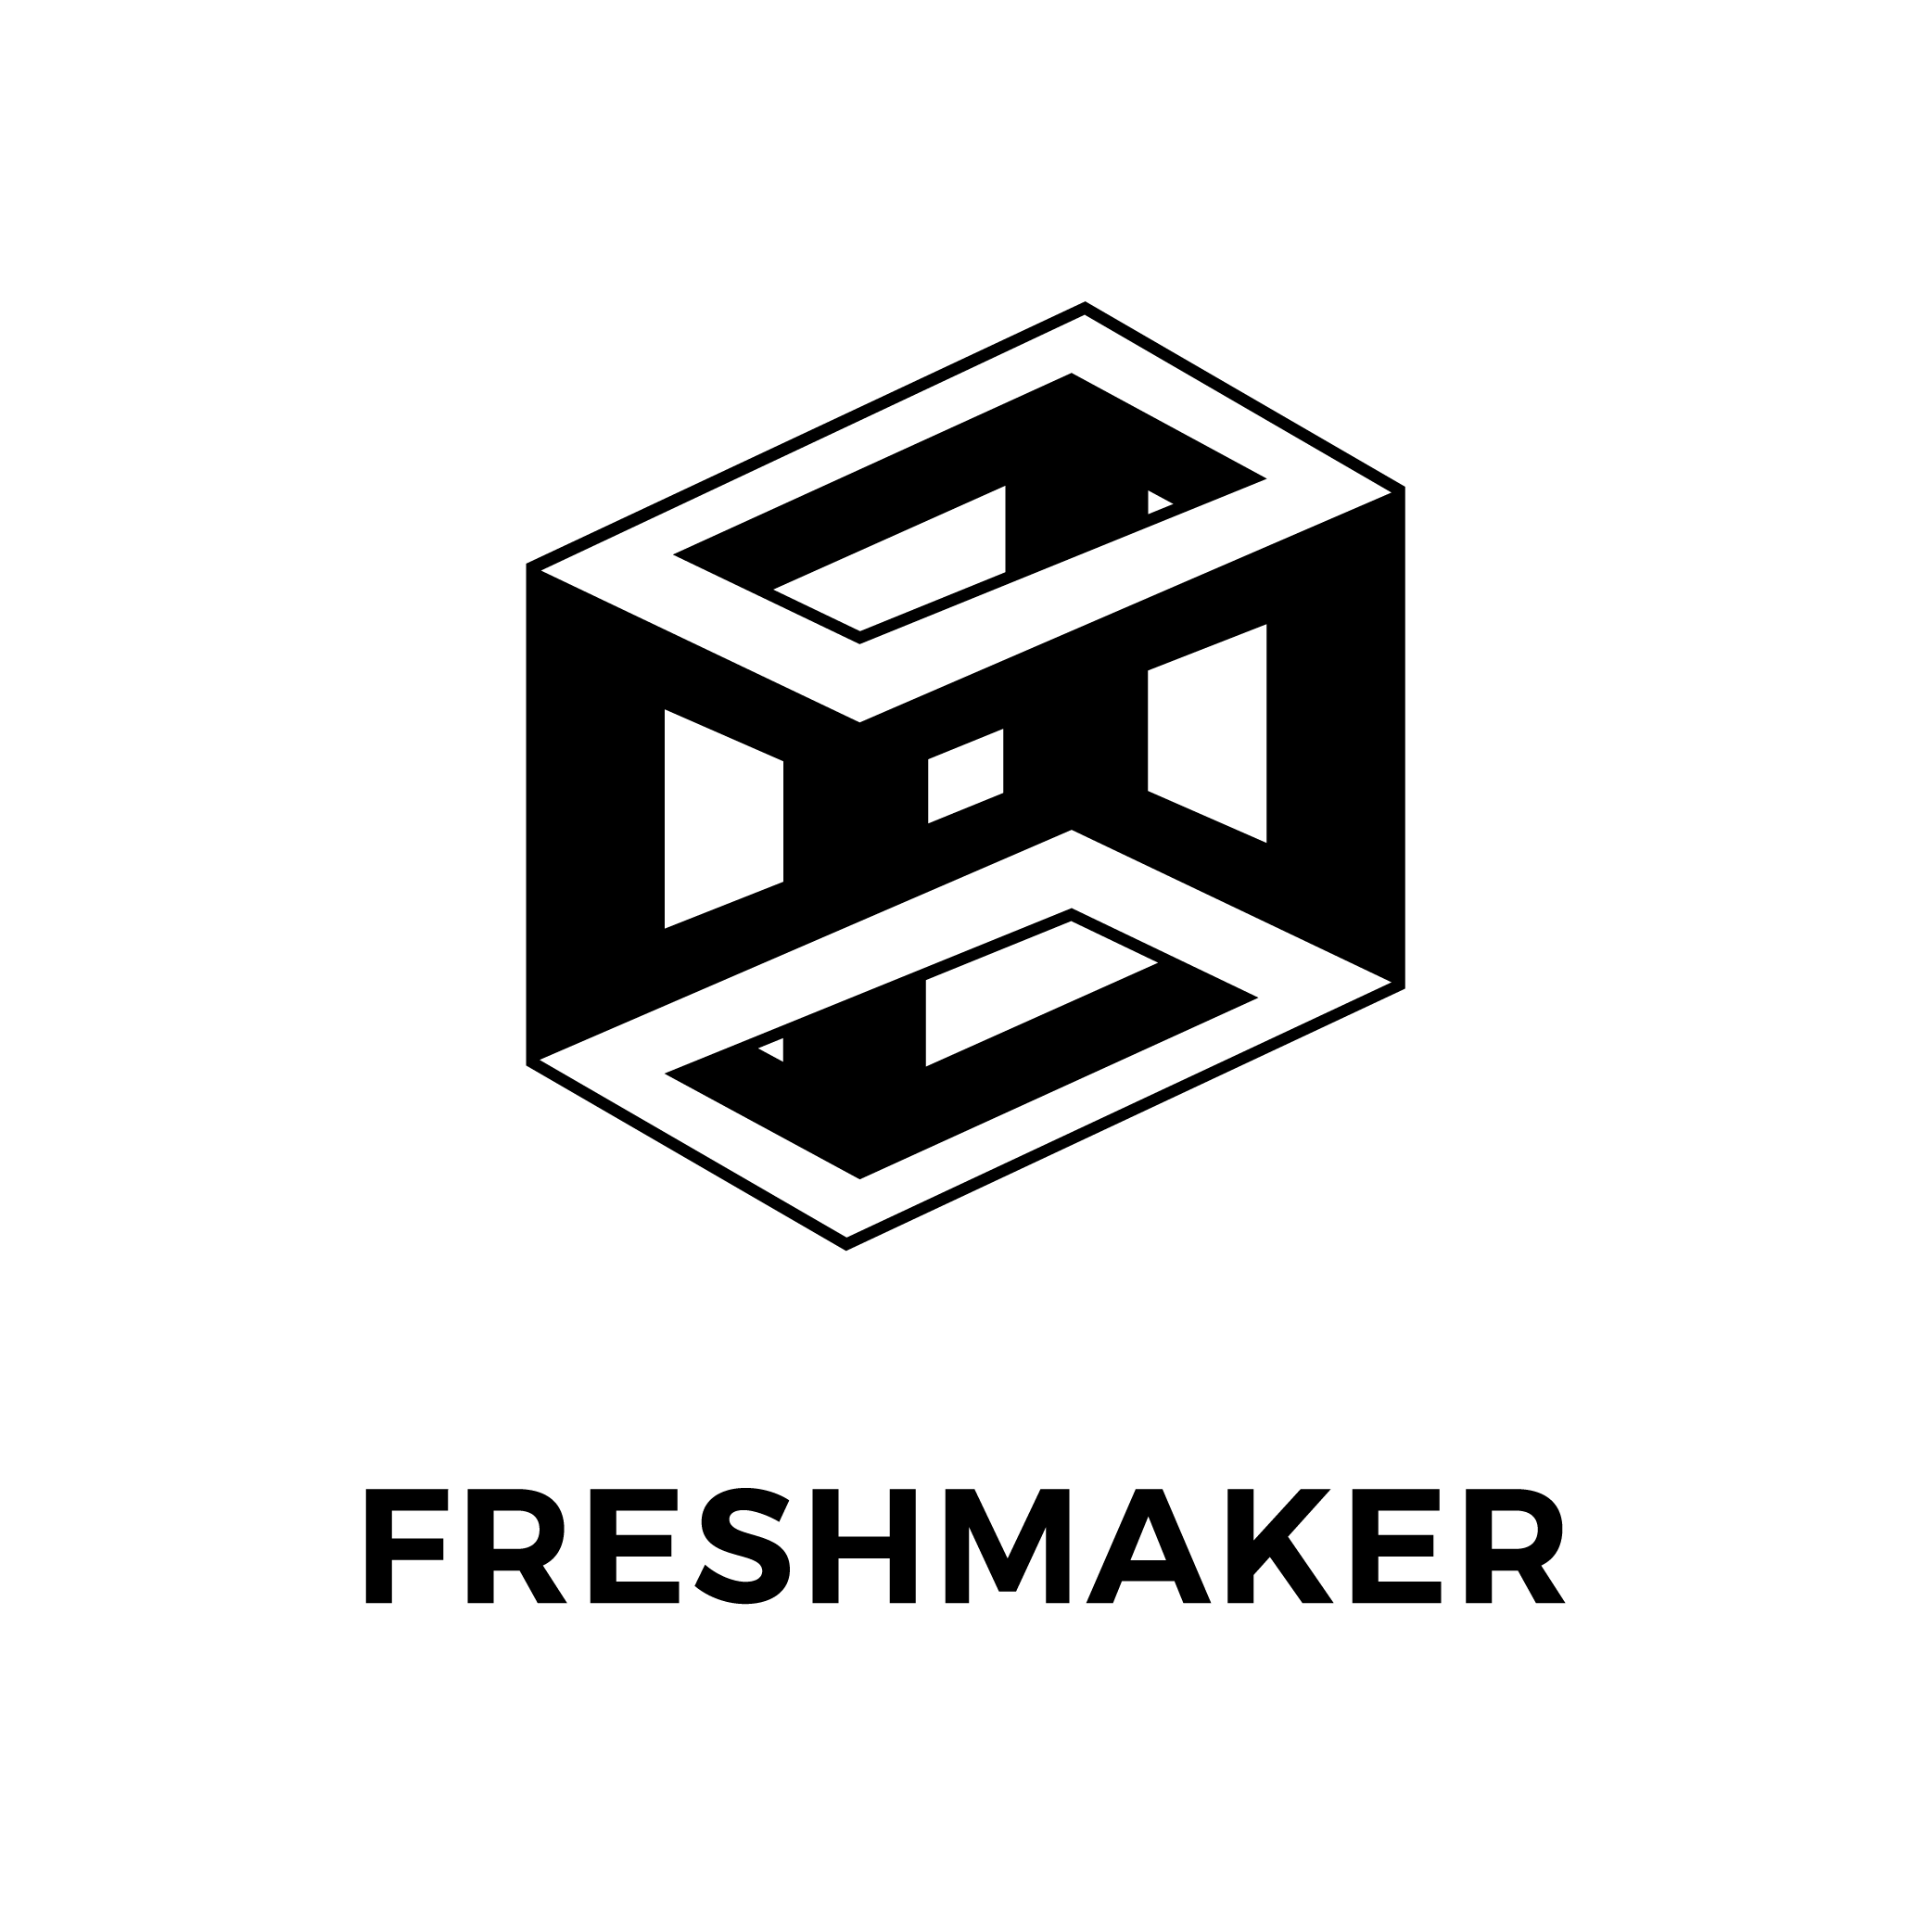 Freshmaker logo - black